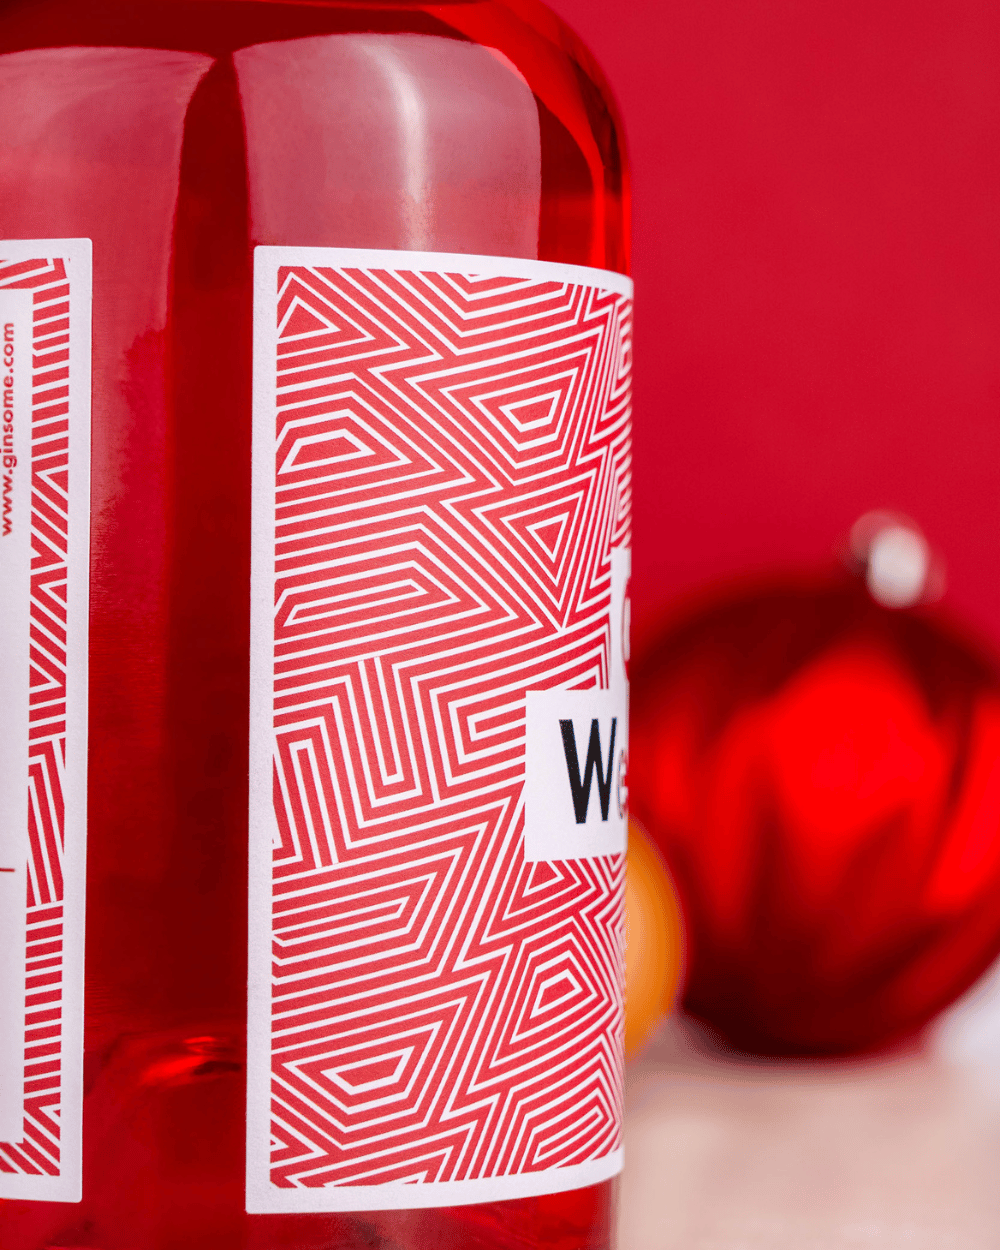 Weihnachts-Gin (Winter-Apfel, Zimt, Vanille, Orange) - Premium Gin (500ml, 42% Vol.)